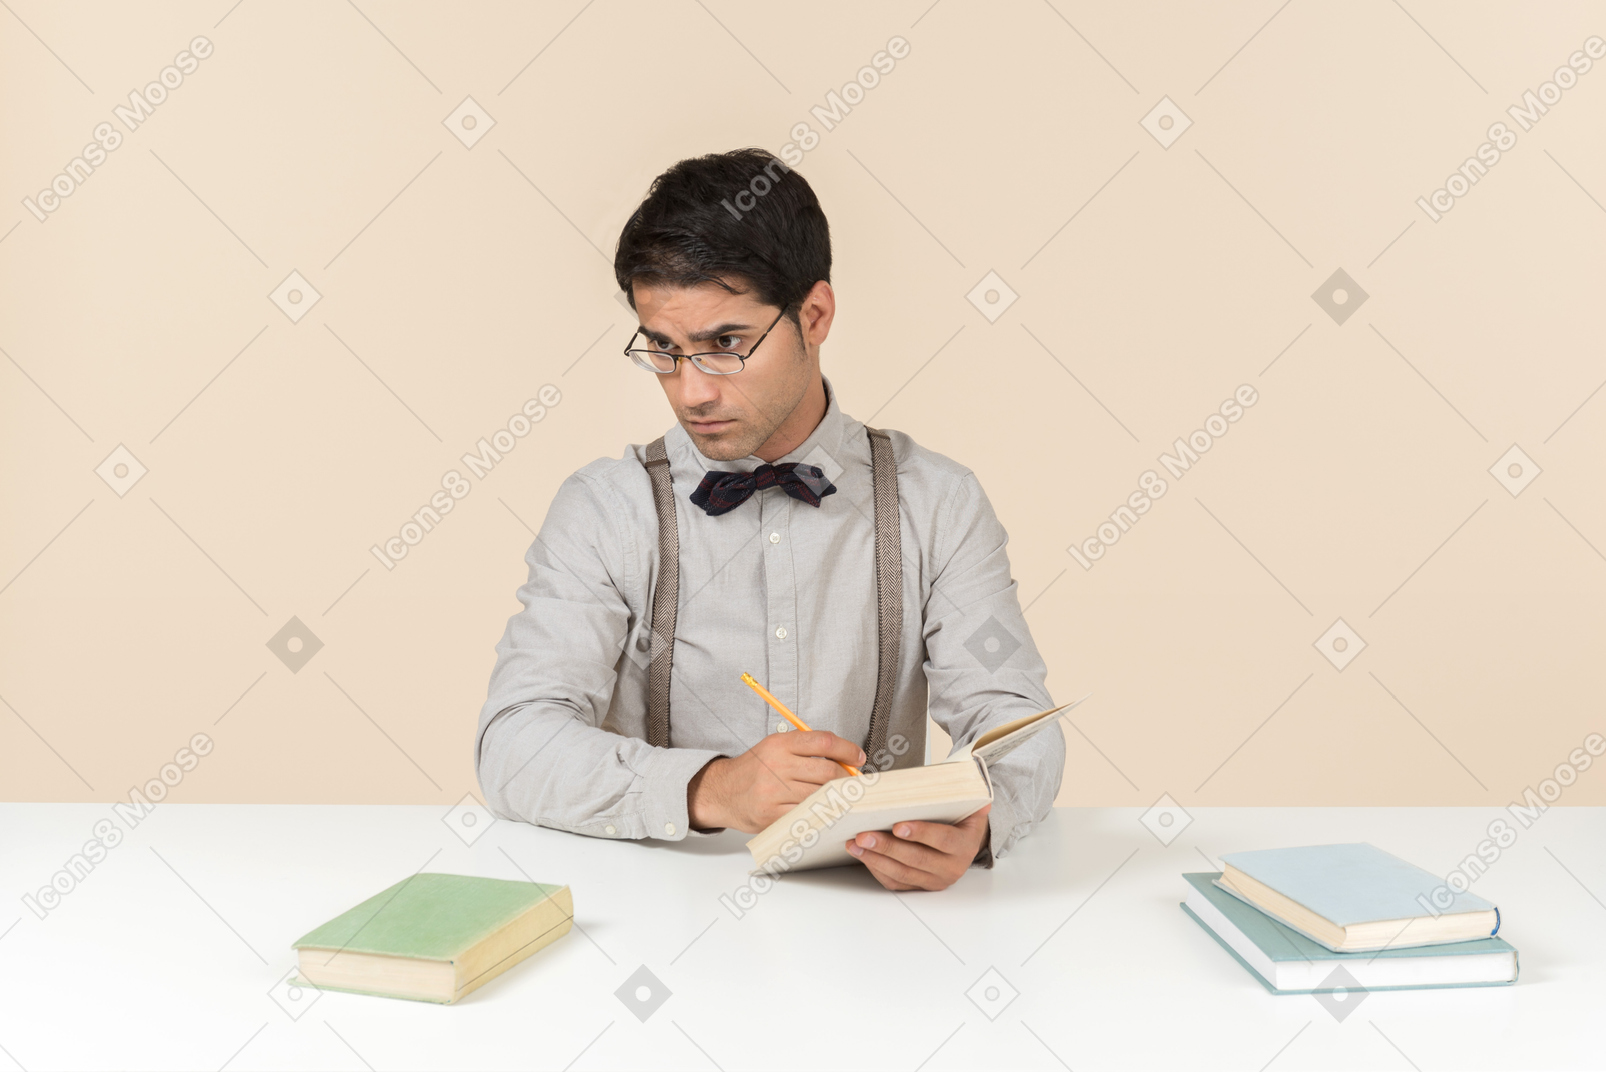 Professor am tisch sitzen und bücher lesen